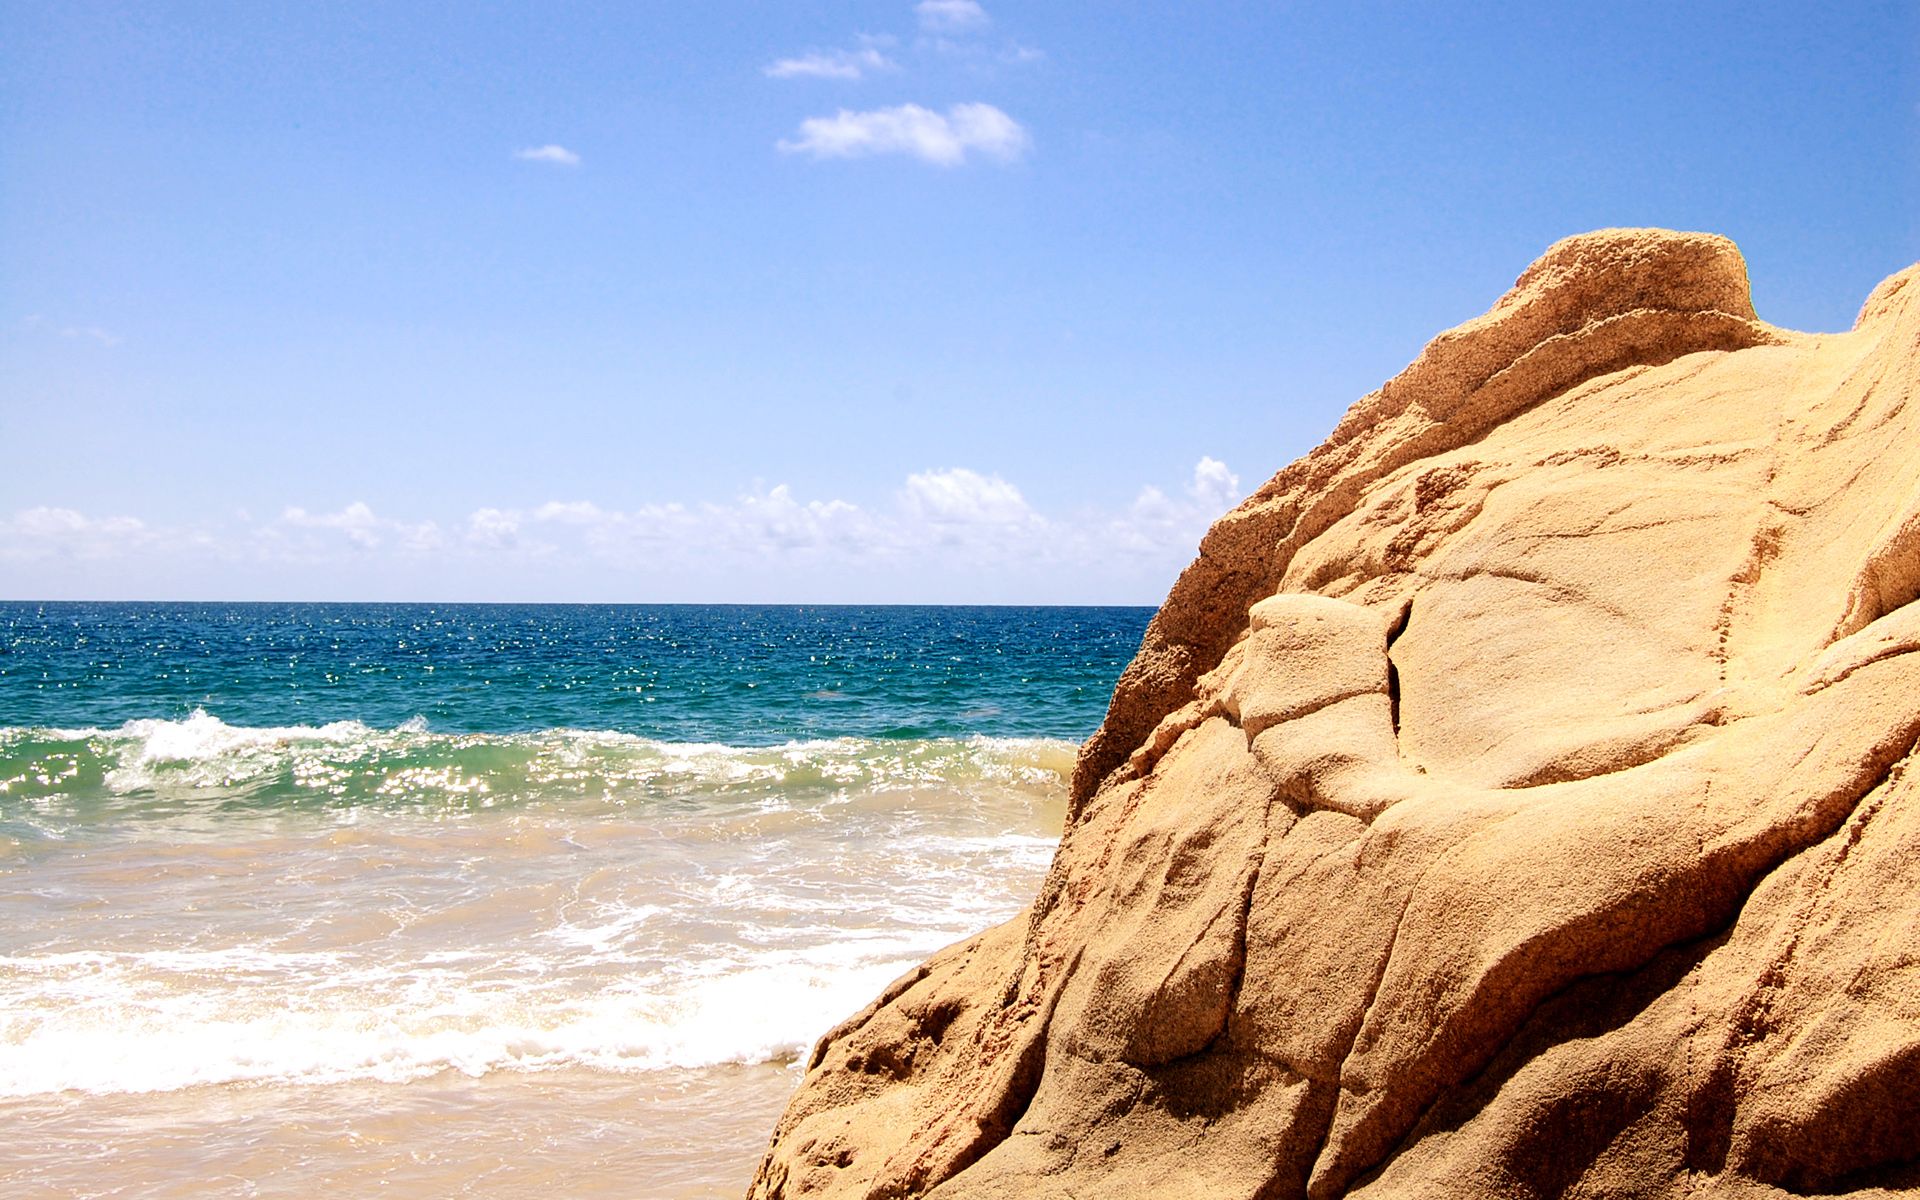 Beach Rock Wallpaper Widescreen 2 | Lugares que visitar | Pinterest ...